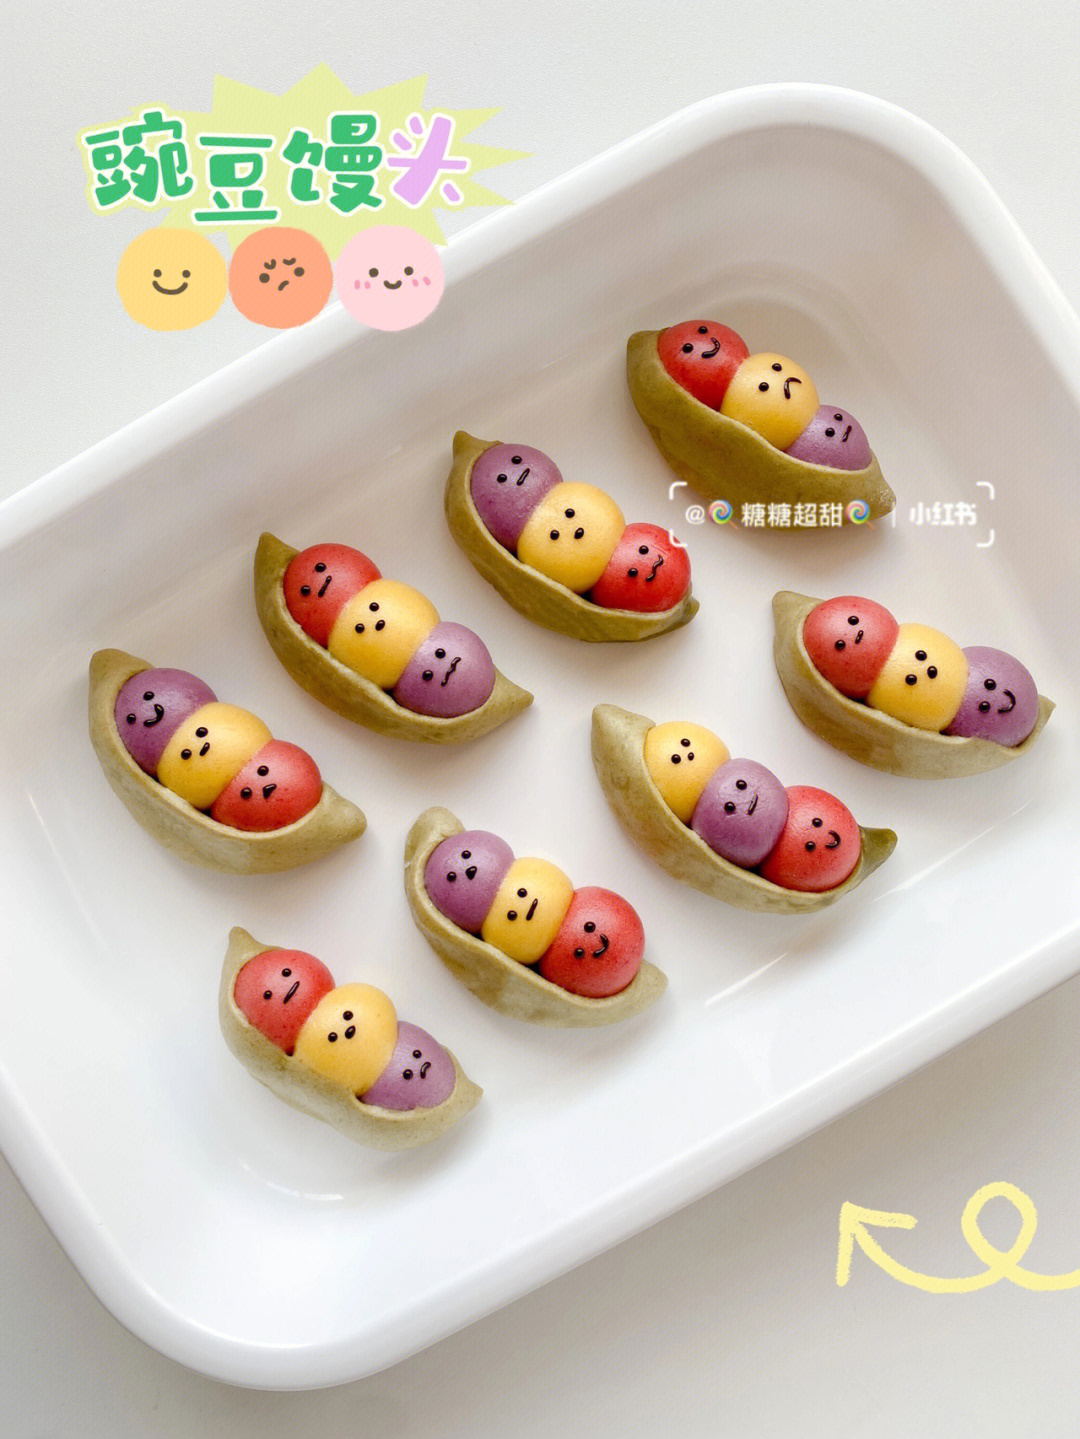 彩色豌豆荚馒头造型可爱适合8m宝宝